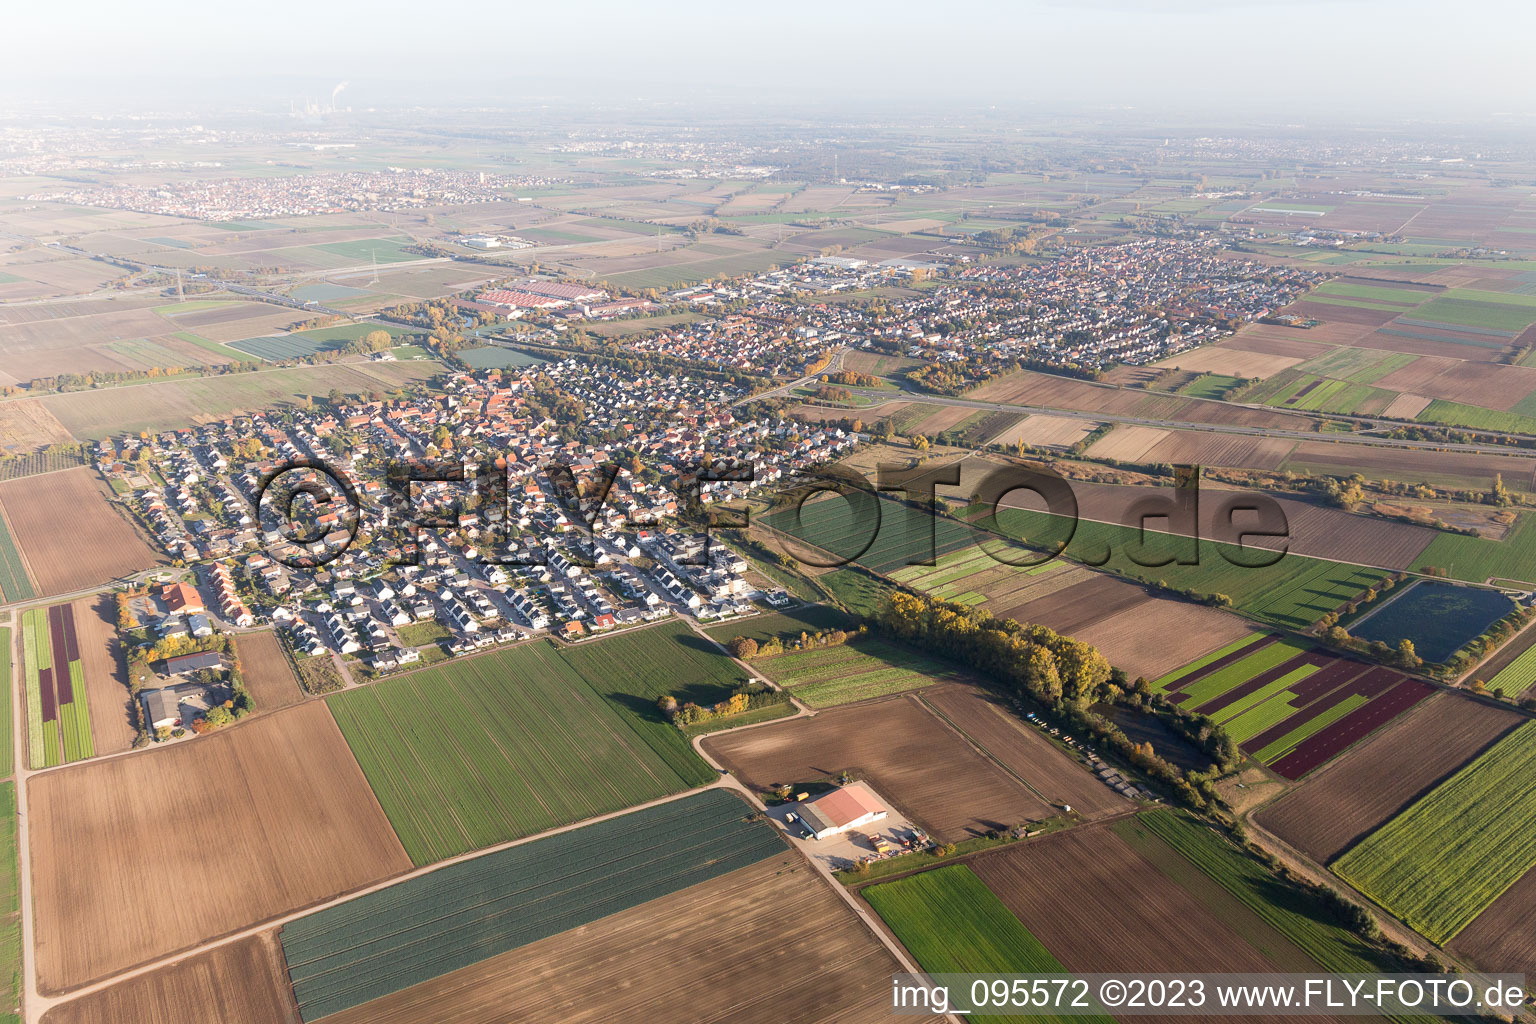 From northwest in the district Schauernheim in Dannstadt-Schauernheim in the state Rhineland-Palatinate, Germany